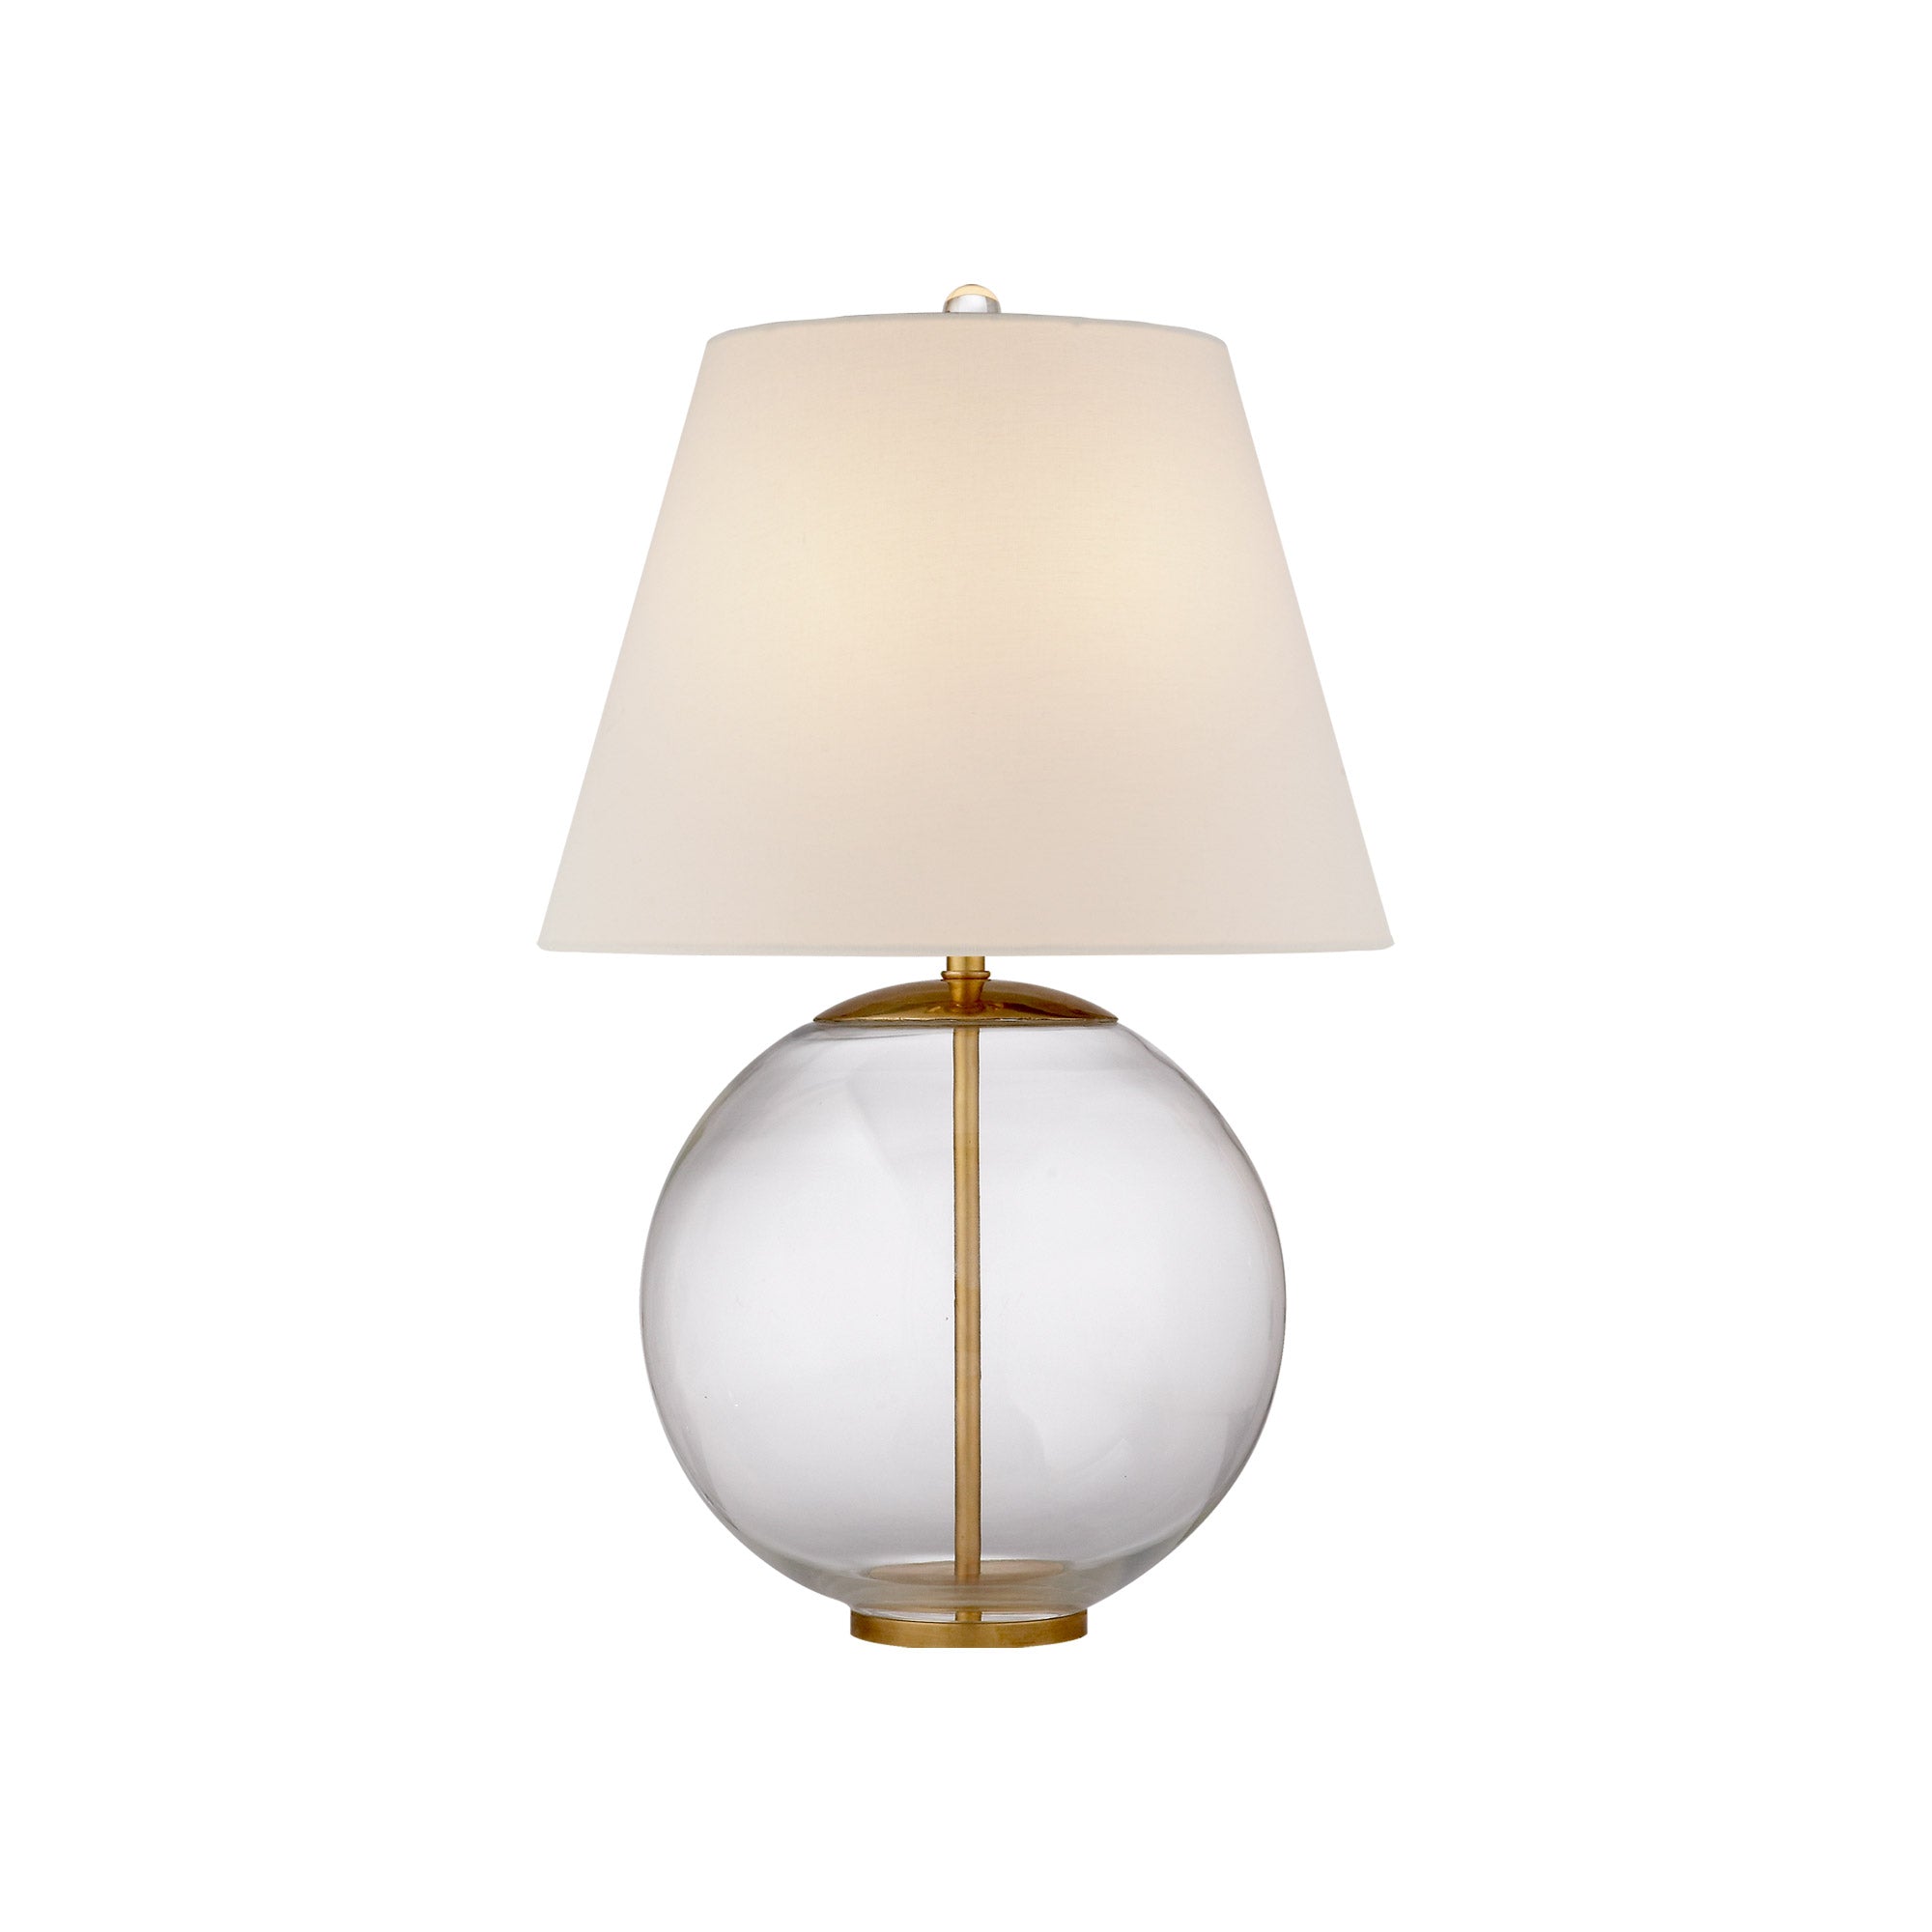 AERIN Morton Table Lamp